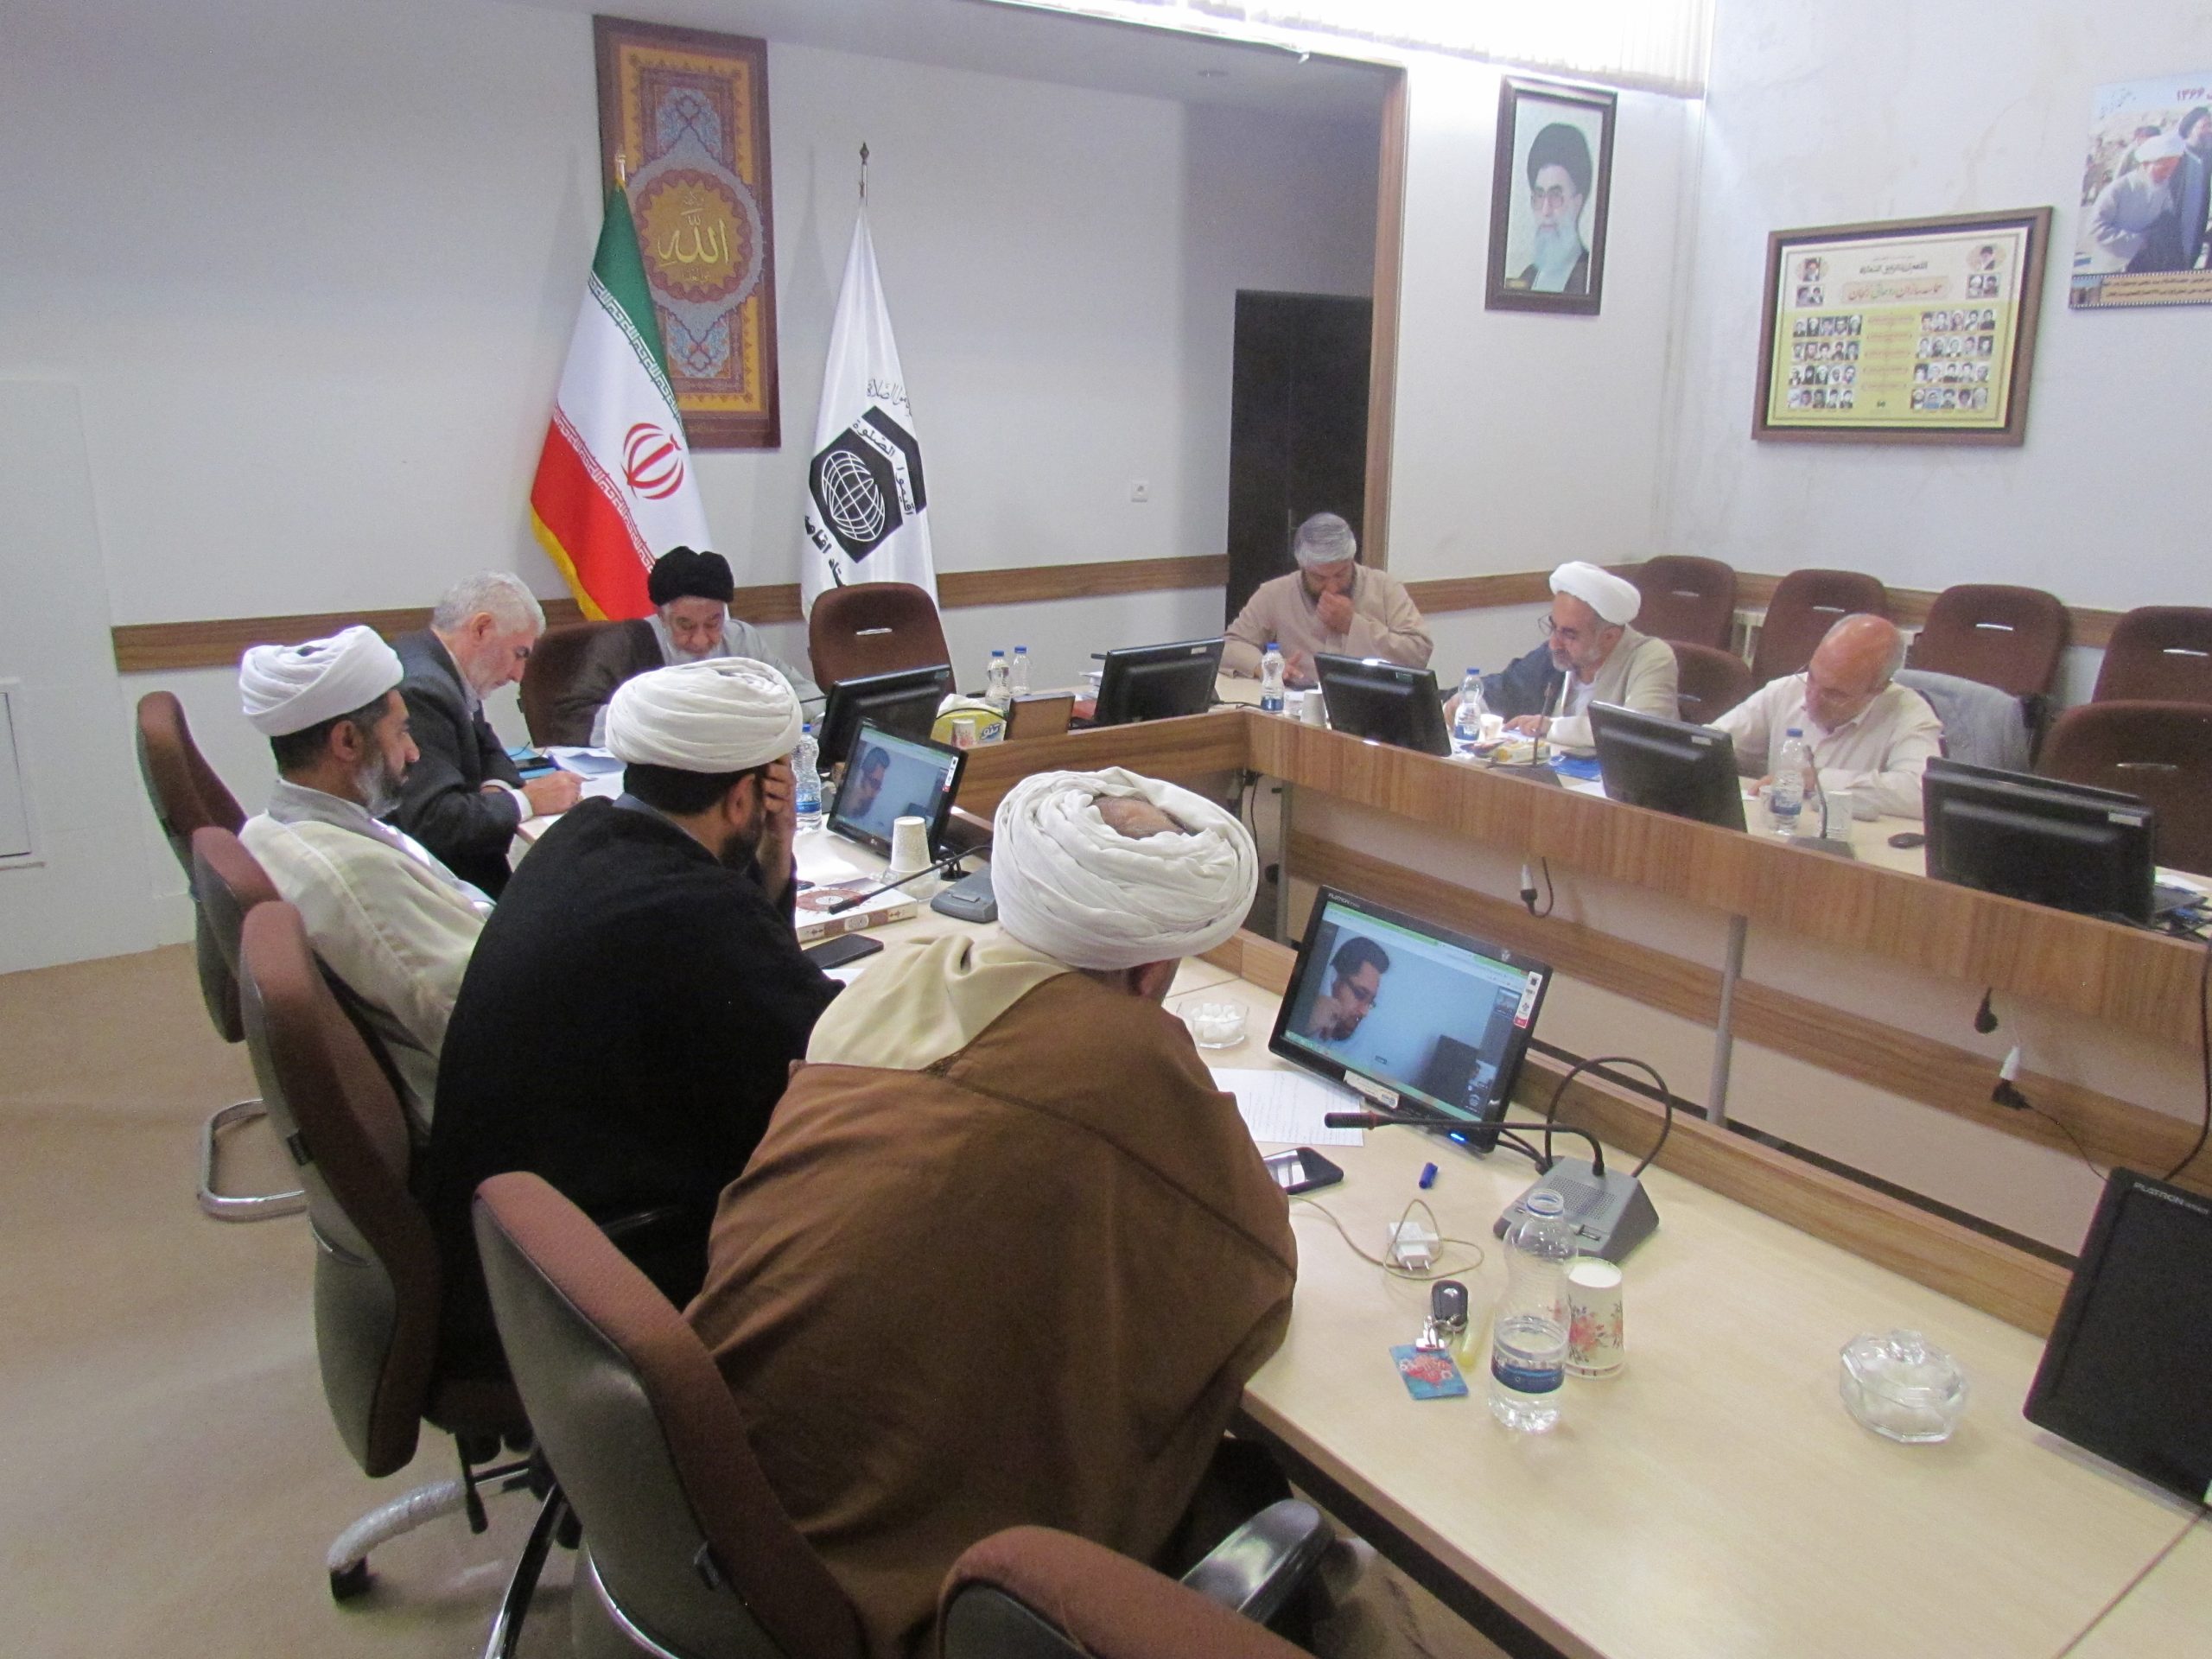 دومین جلسه شورای اقامه نماز منطقه شمالغرب کشور به میزبانی استان زنجان برگزار شد.